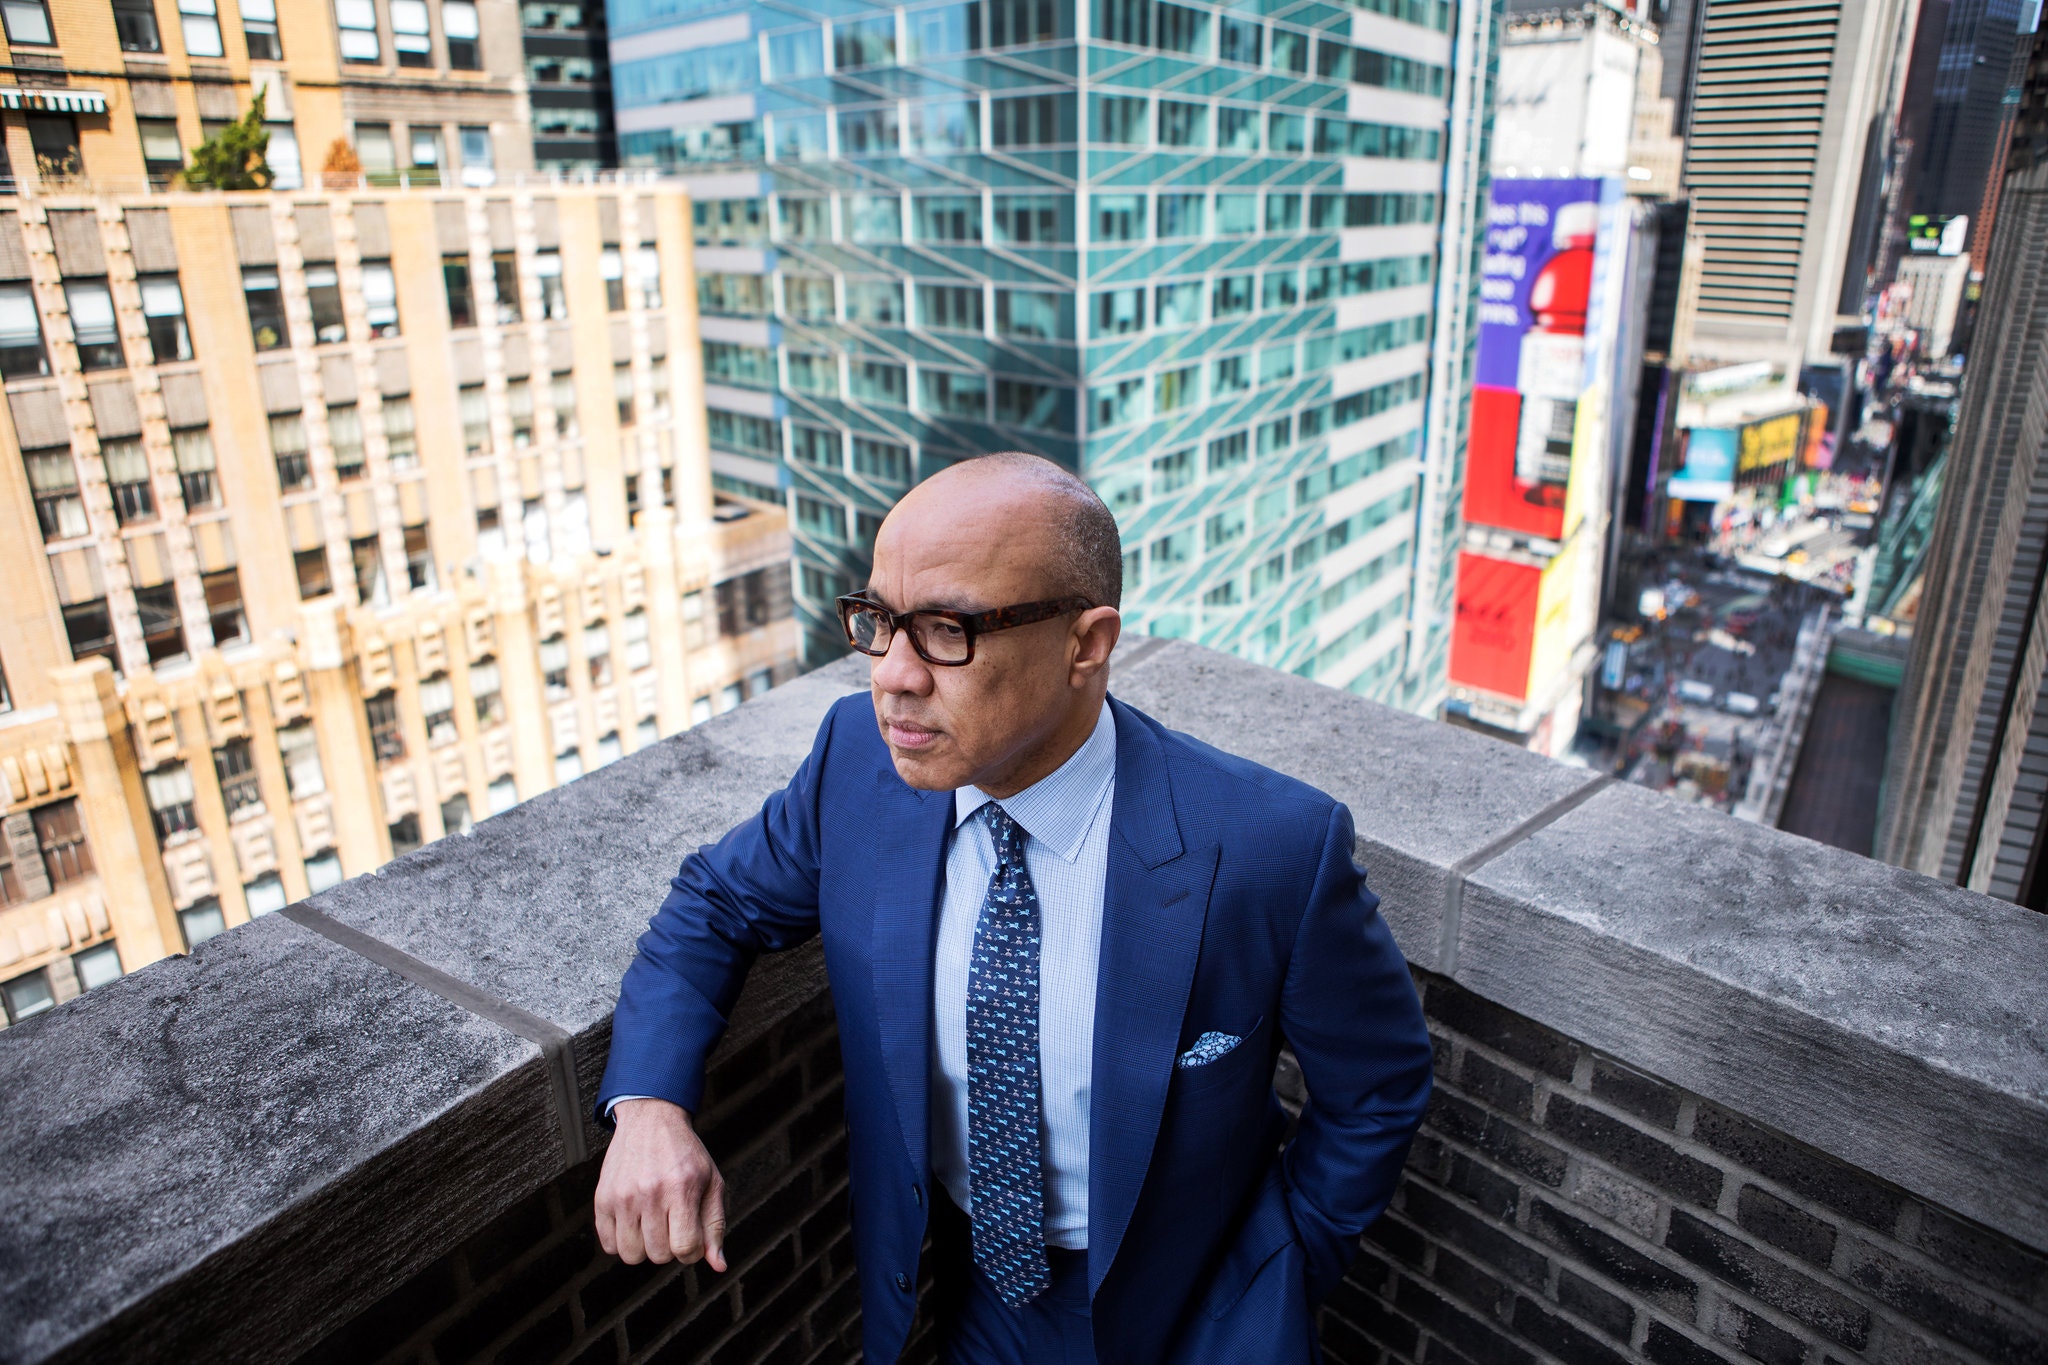 Darren Walker, wearing a blue suit, standing on a balcony in New York City